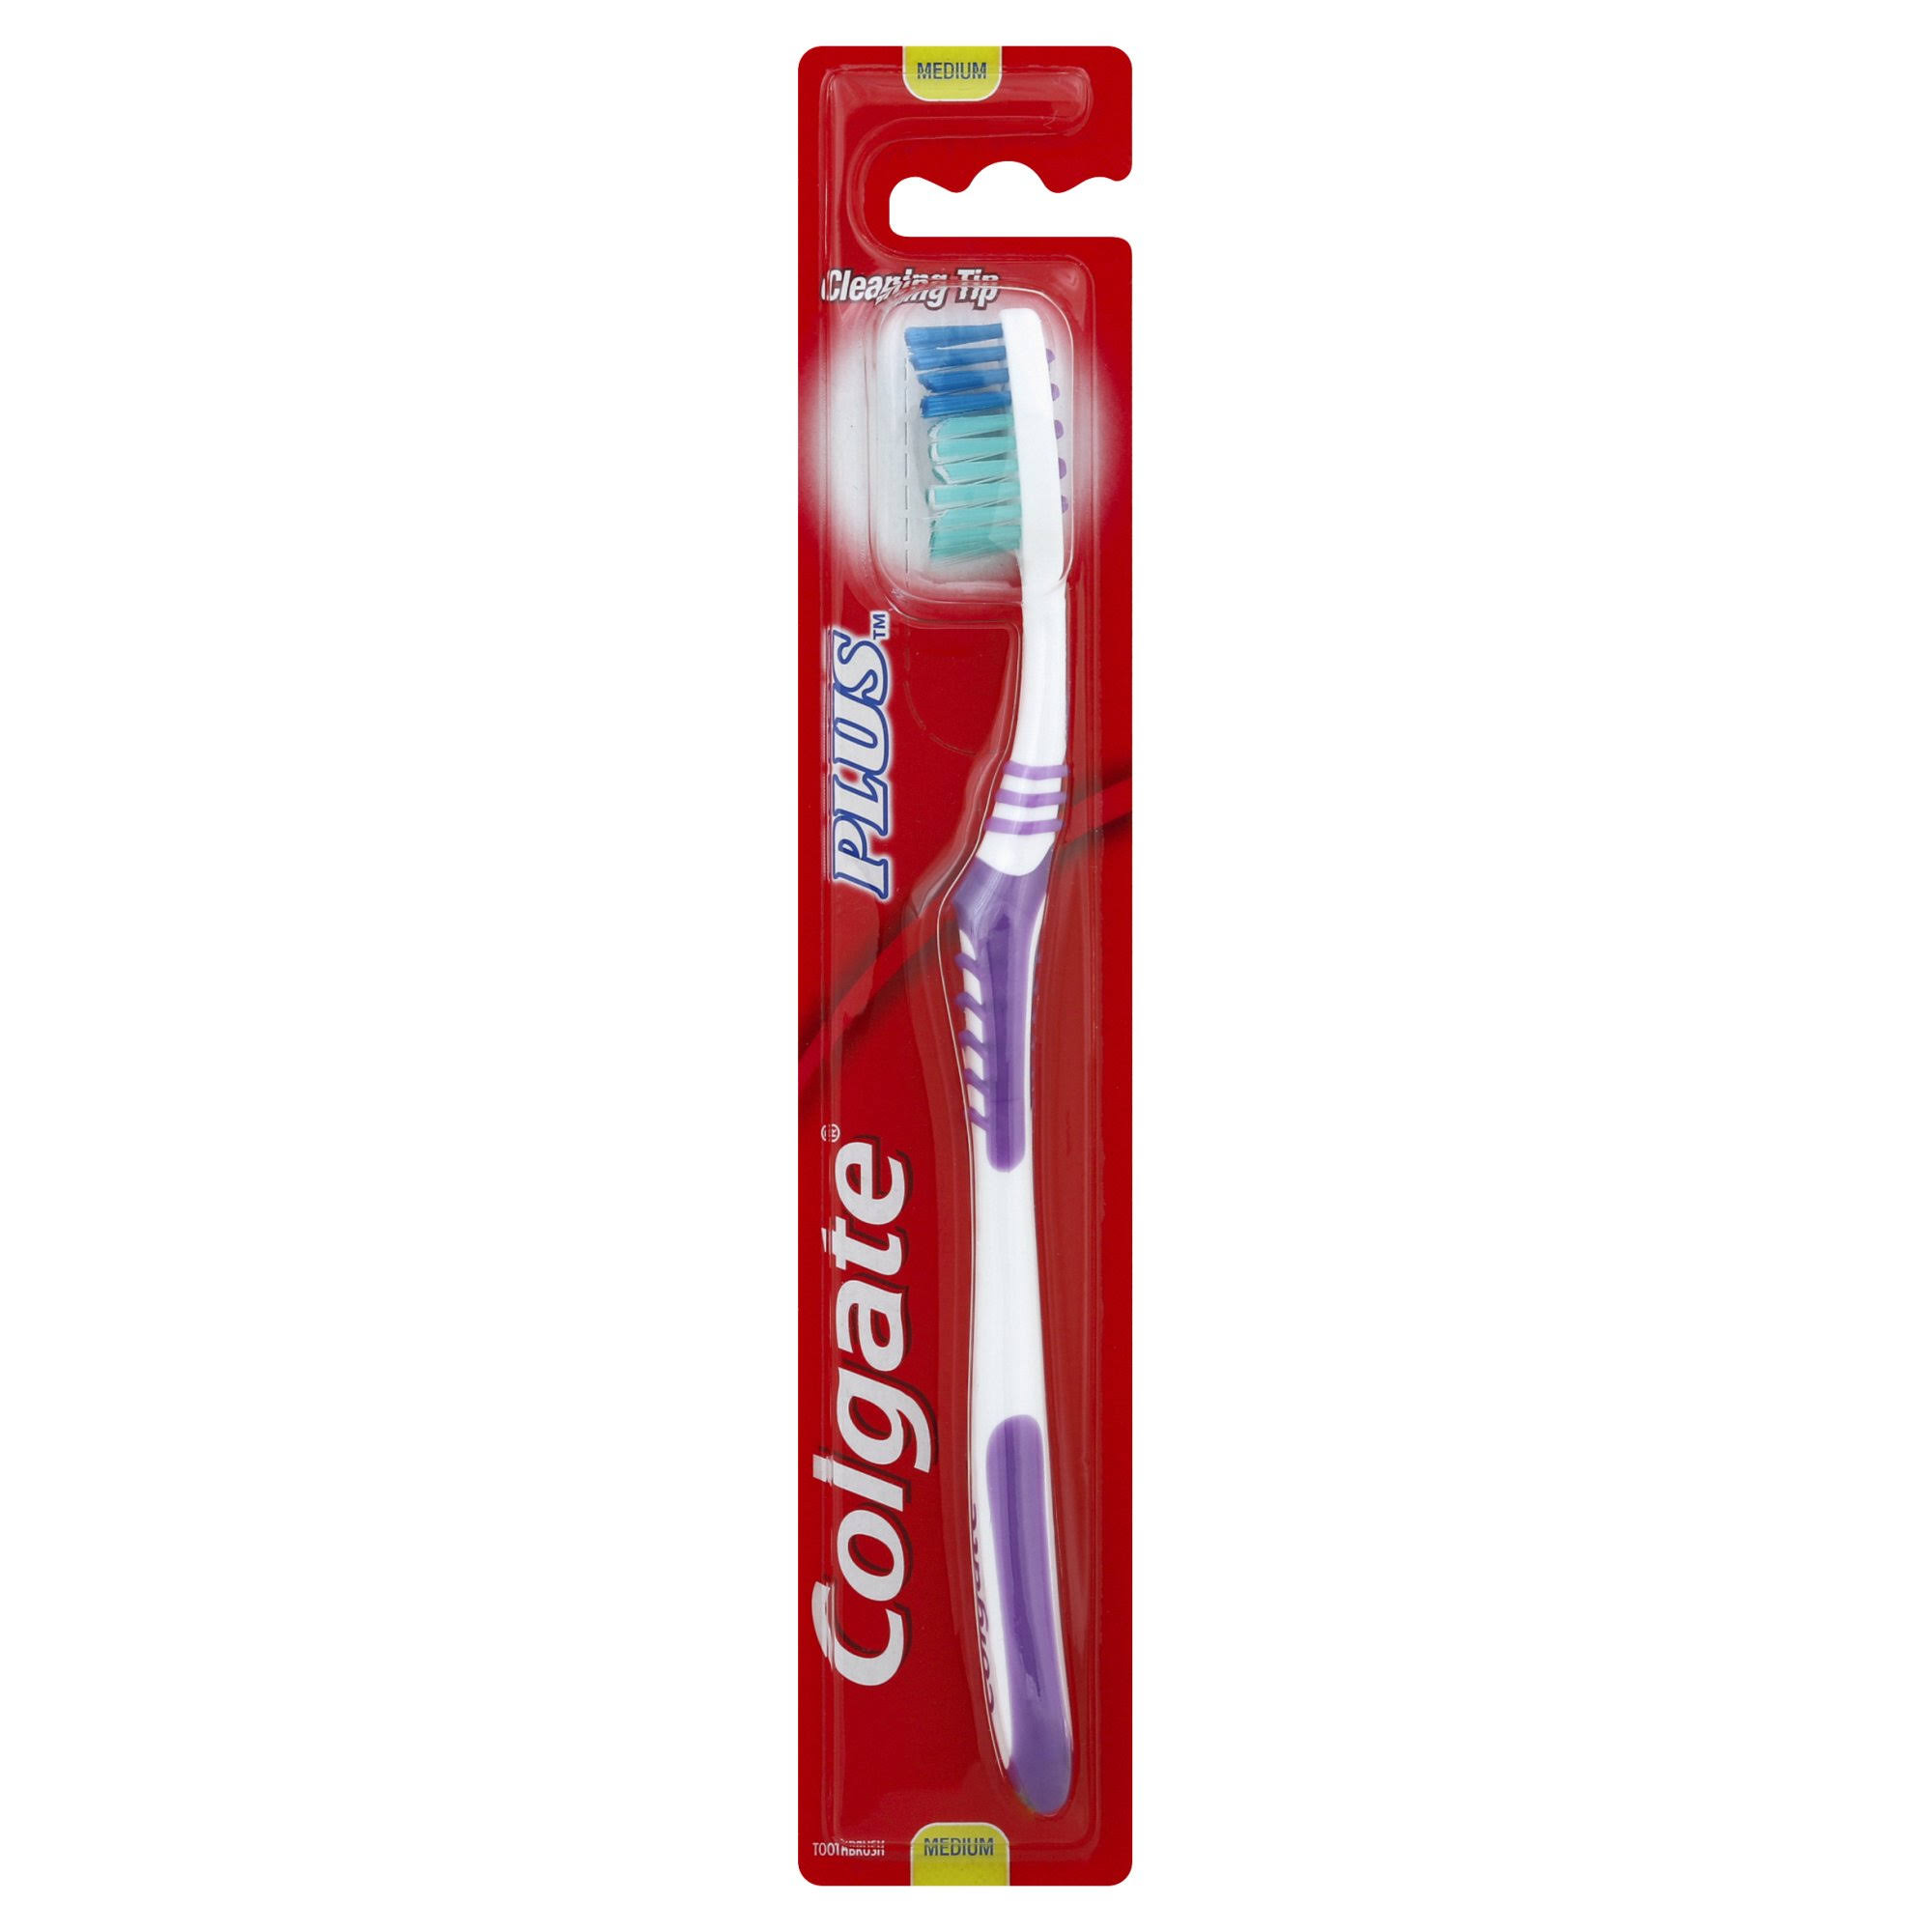 Colgate Plus Toothbrush, Medium